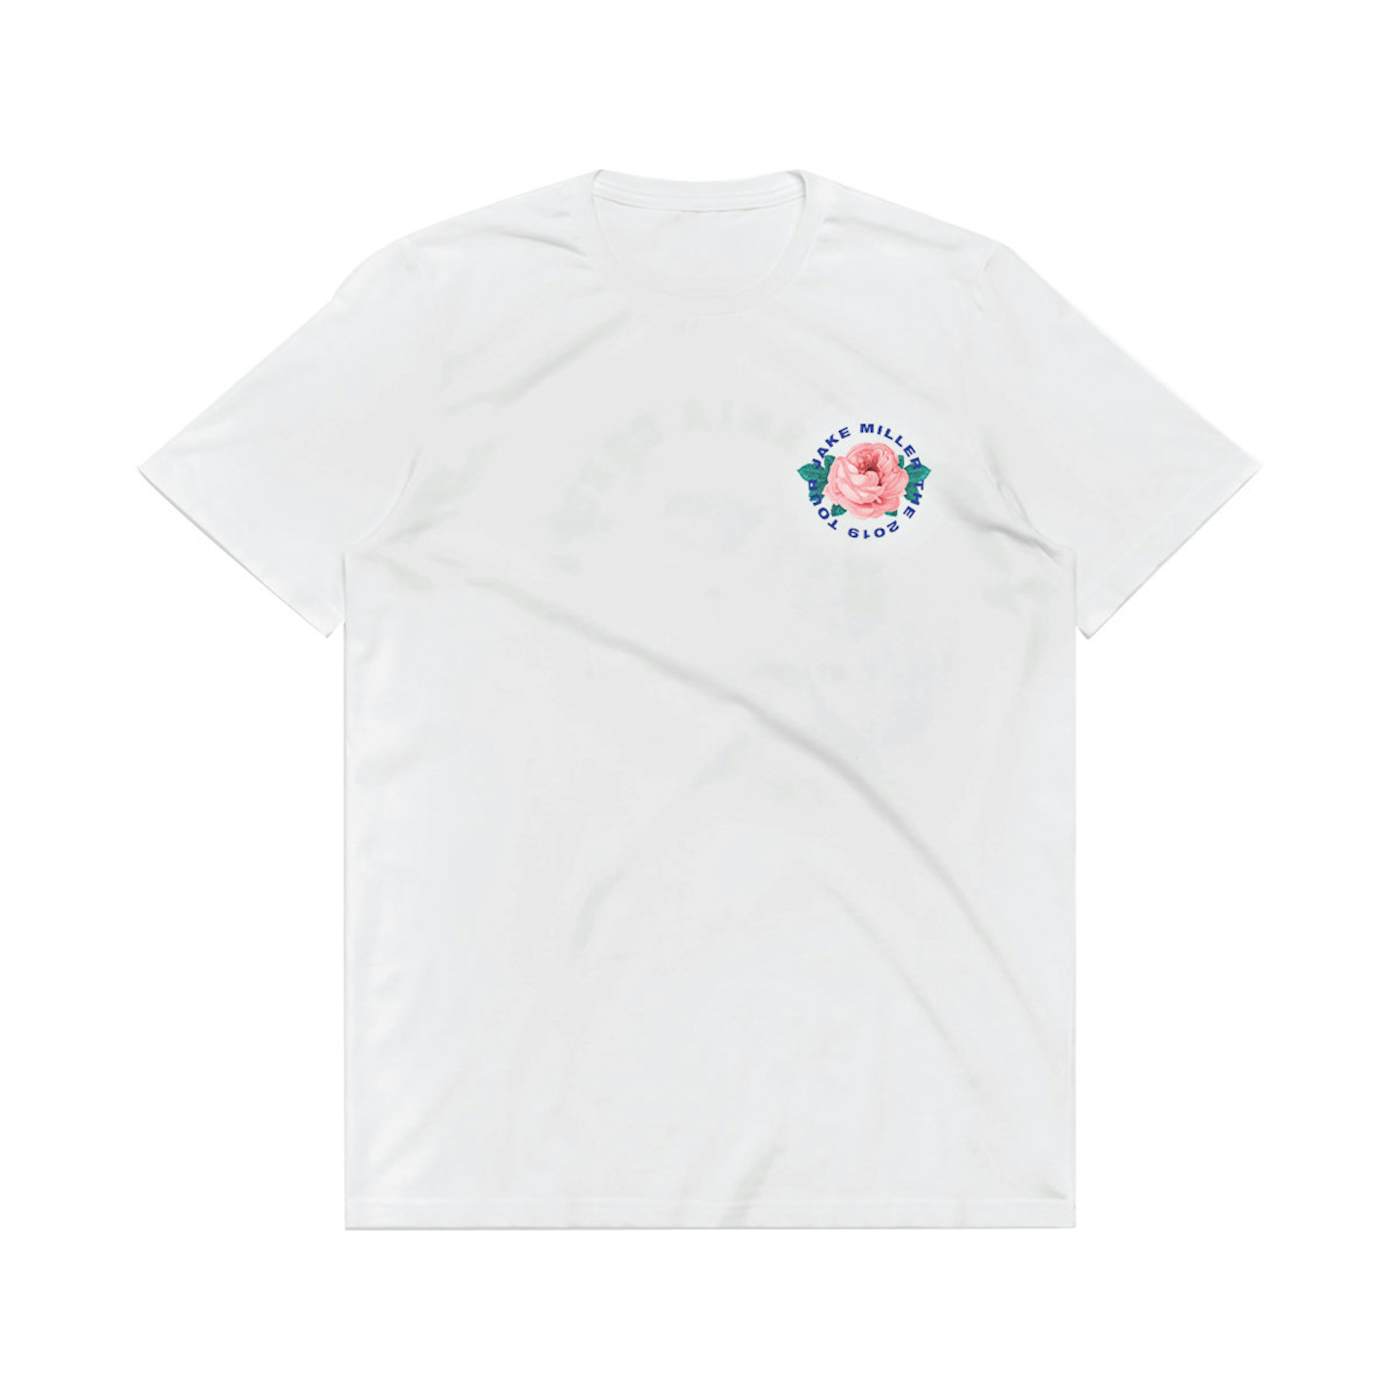 Jake Miller Tour 2019 White T-Shirt